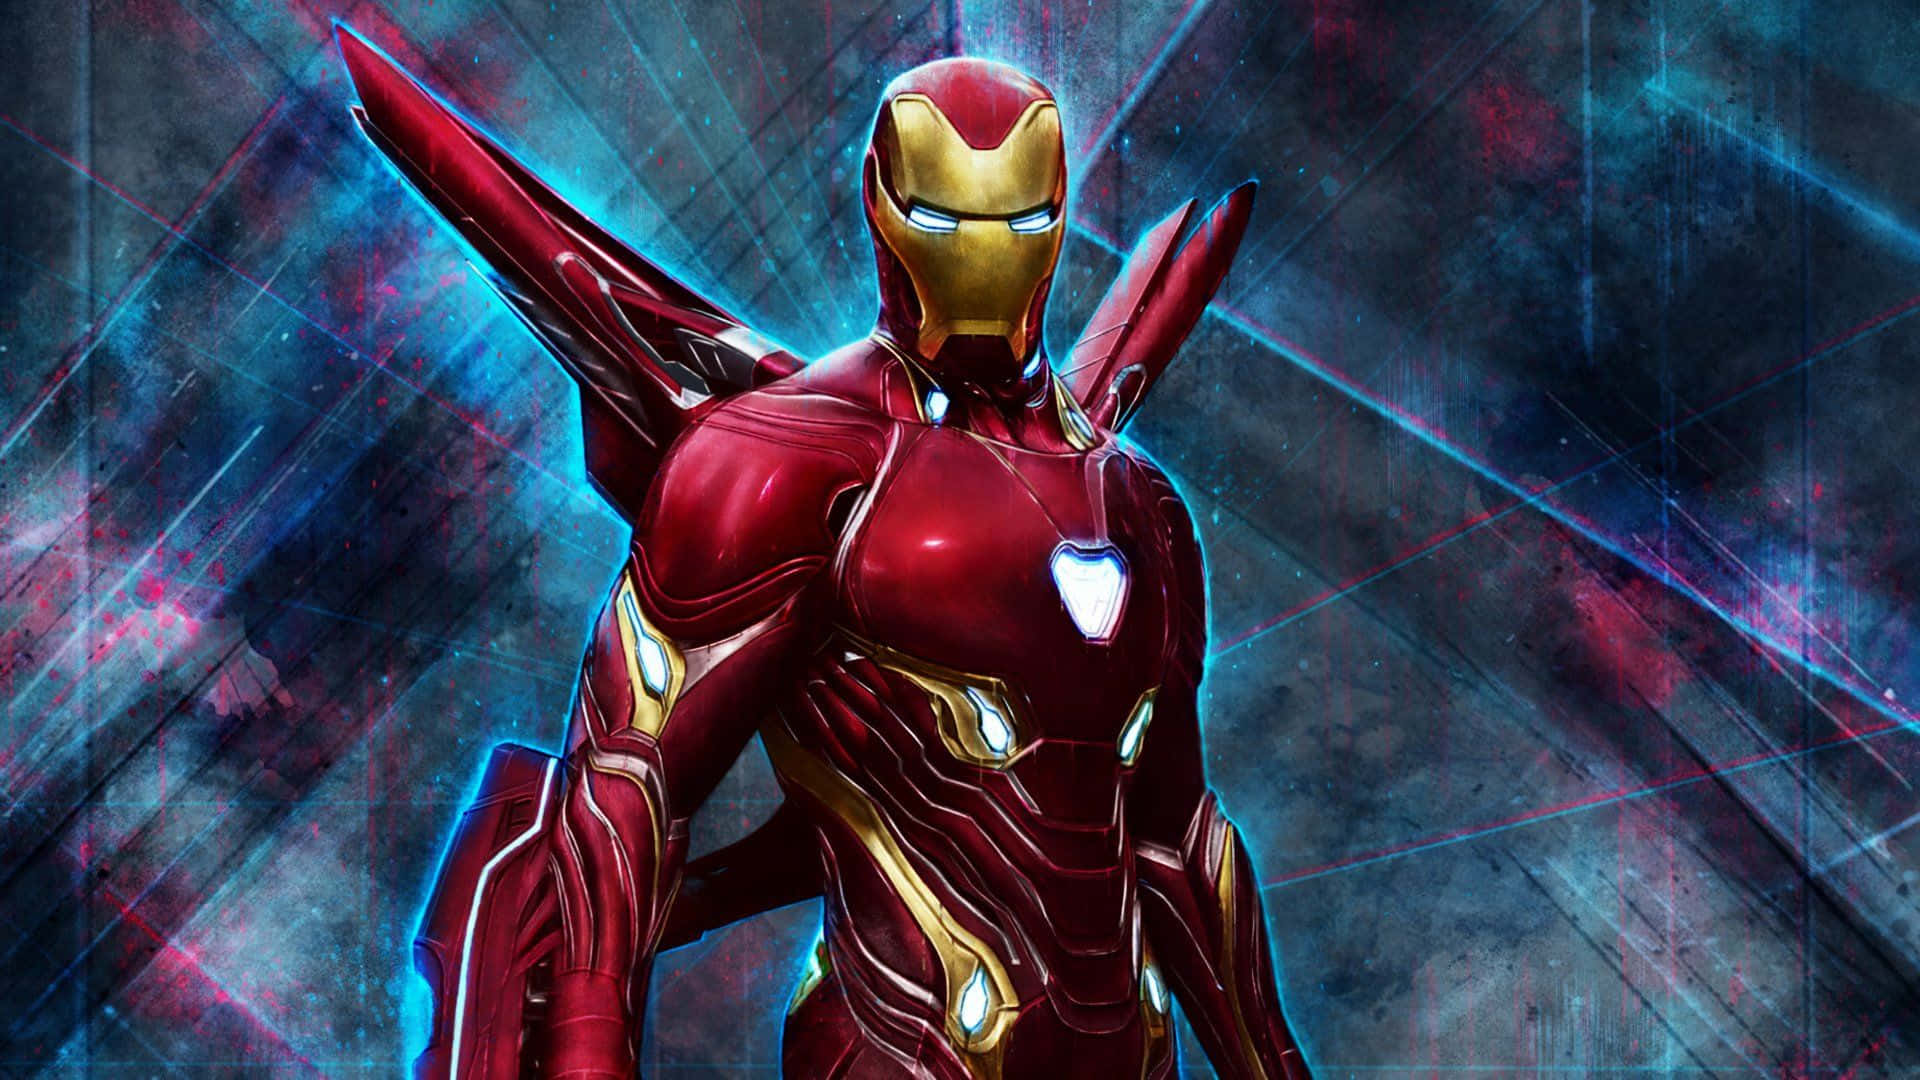 Avengers Iron Man 1920 X 1080 Wallpaper